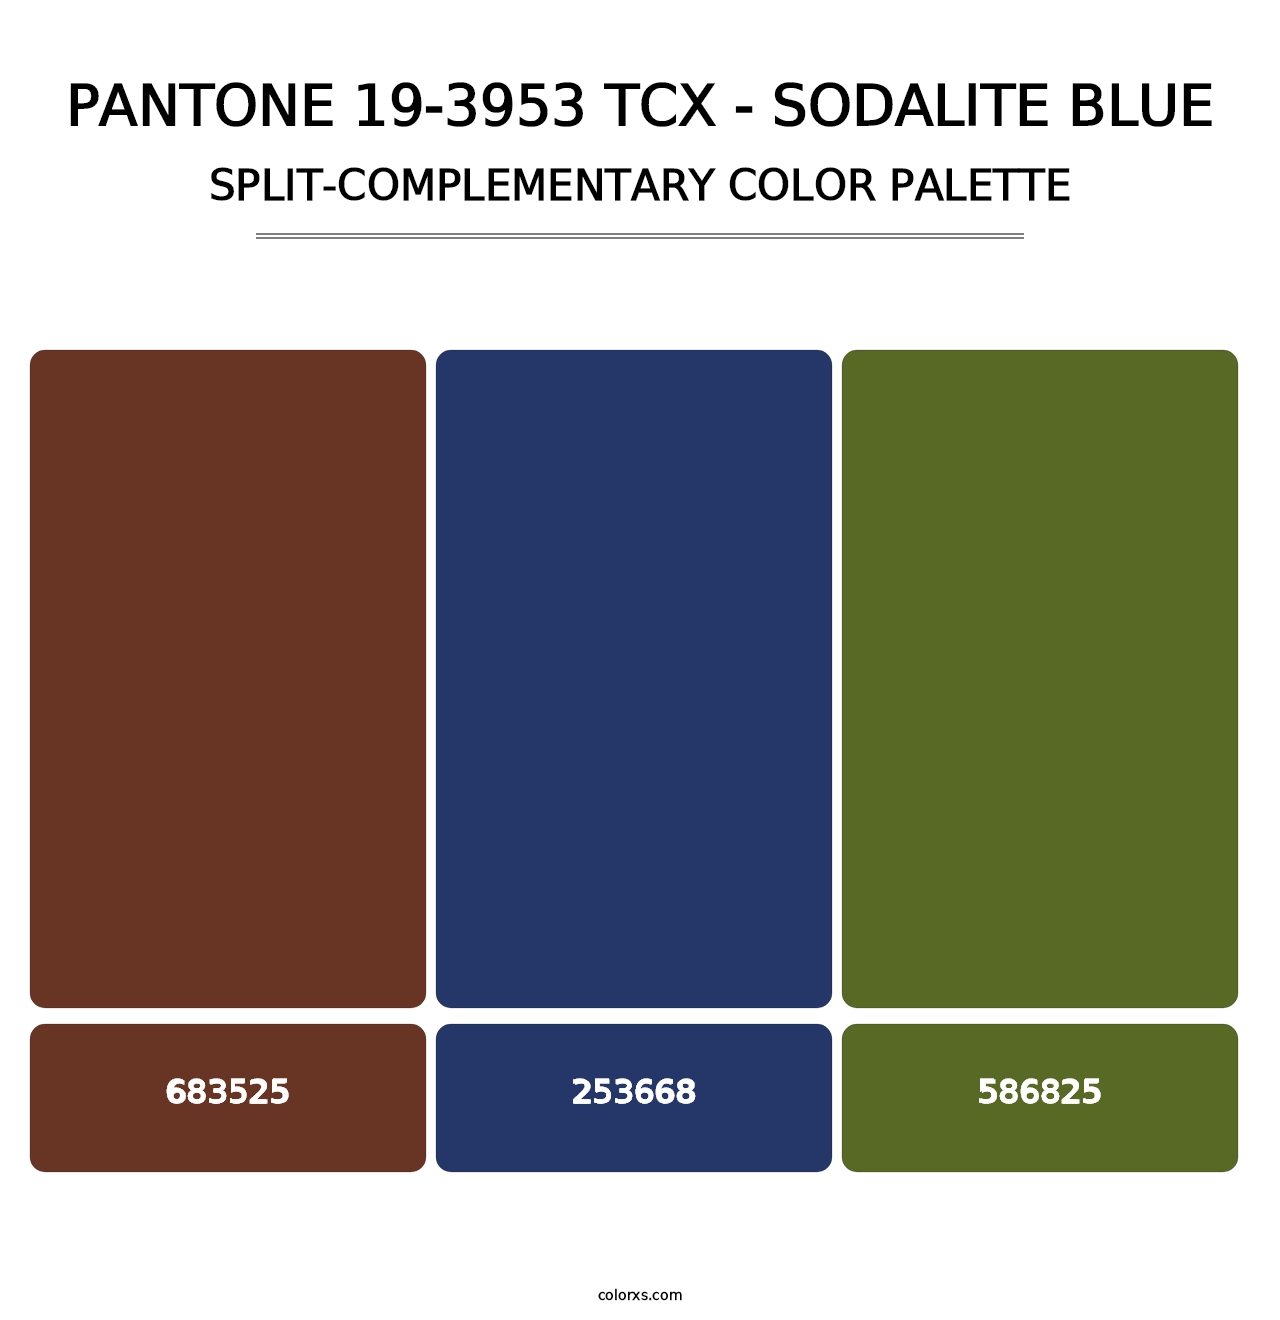 PANTONE 19-3953 TCX - Sodalite Blue - Split-Complementary Color Palette